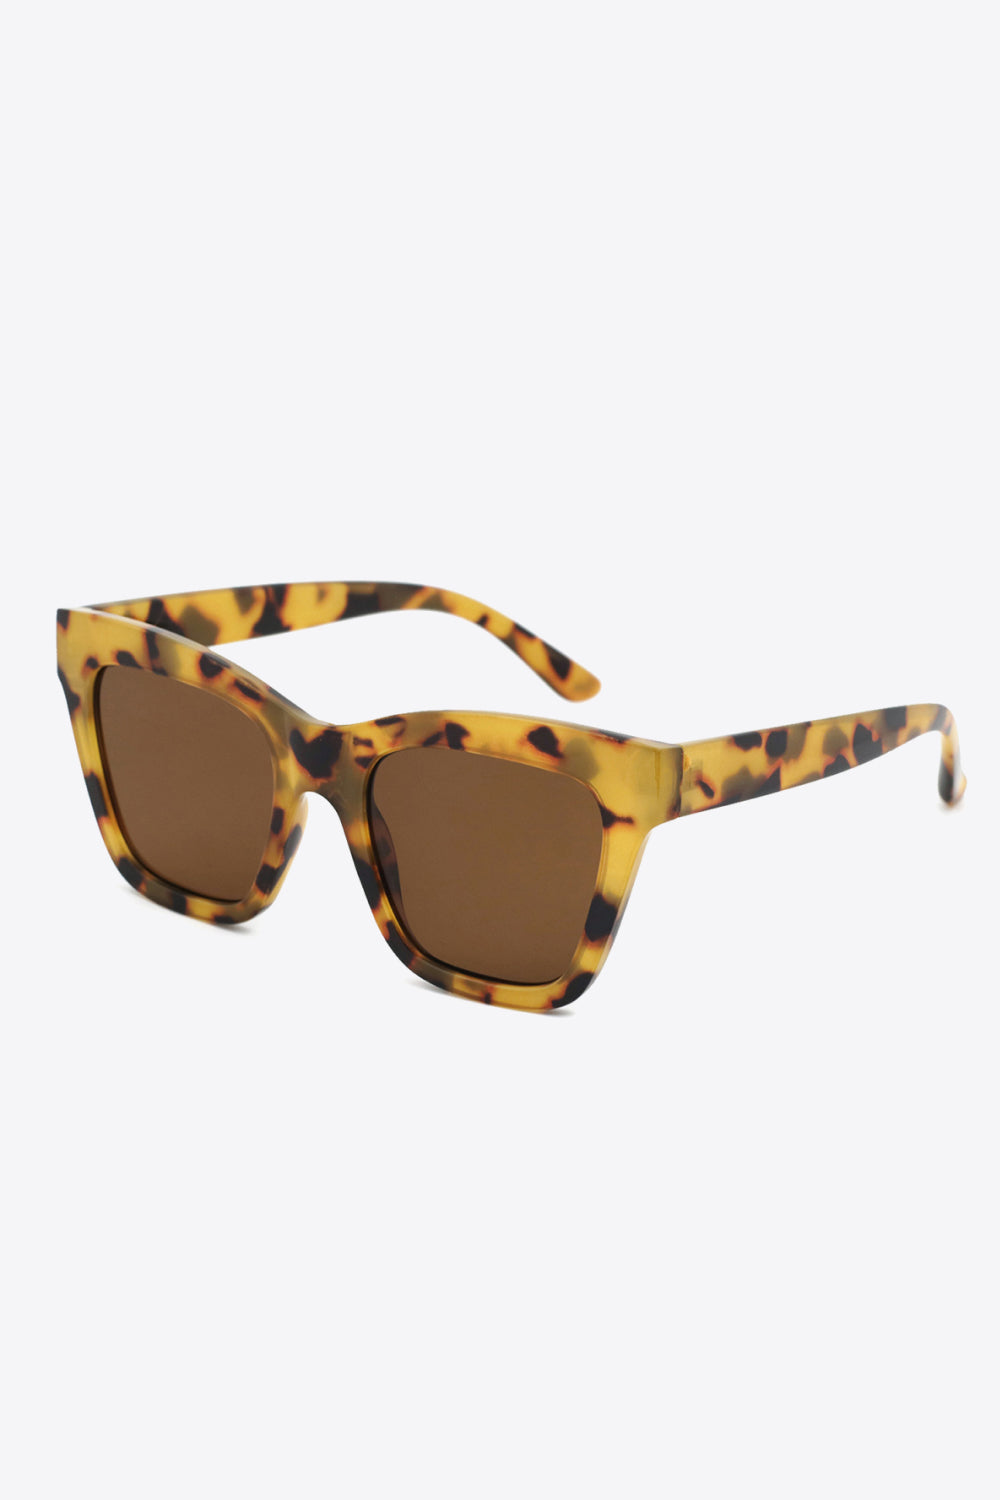 Acetate Lens UV400 Sunglasses - Sunglasses - FITGGINS